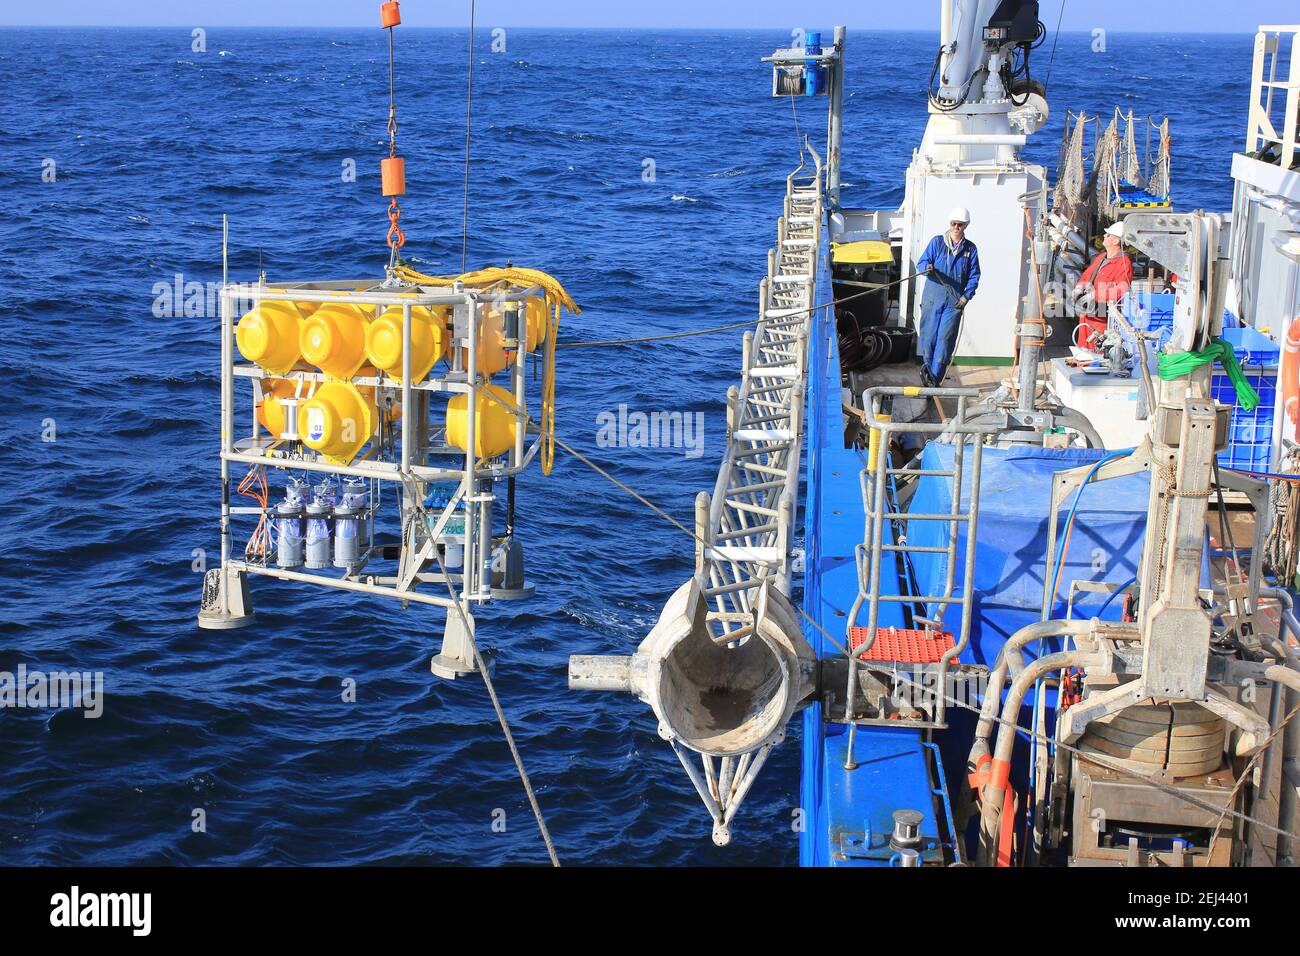 La distribuzione di un lander ALBEX che può scendere al fondo marino con apparecchiature per misurare la direzione corrente e la velocità, ossigeno disciolto, ecc. Foto Stock